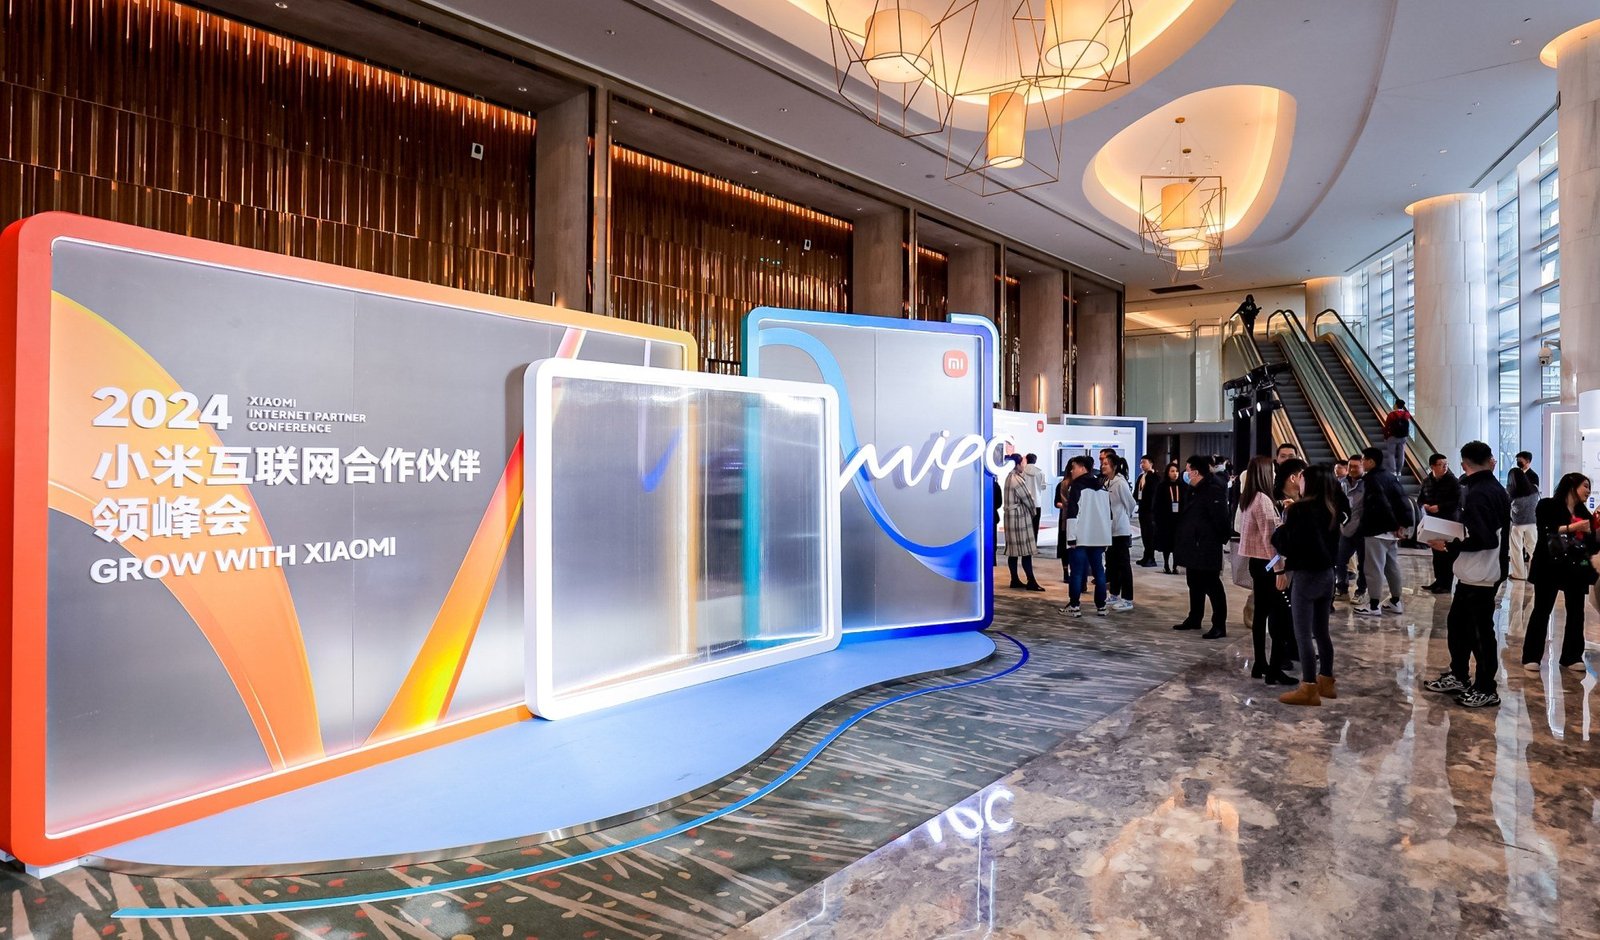 L'activité Internet de Xiaomi connaît une croissance rapide sur les marchés étrangers avec des services supplémentaires